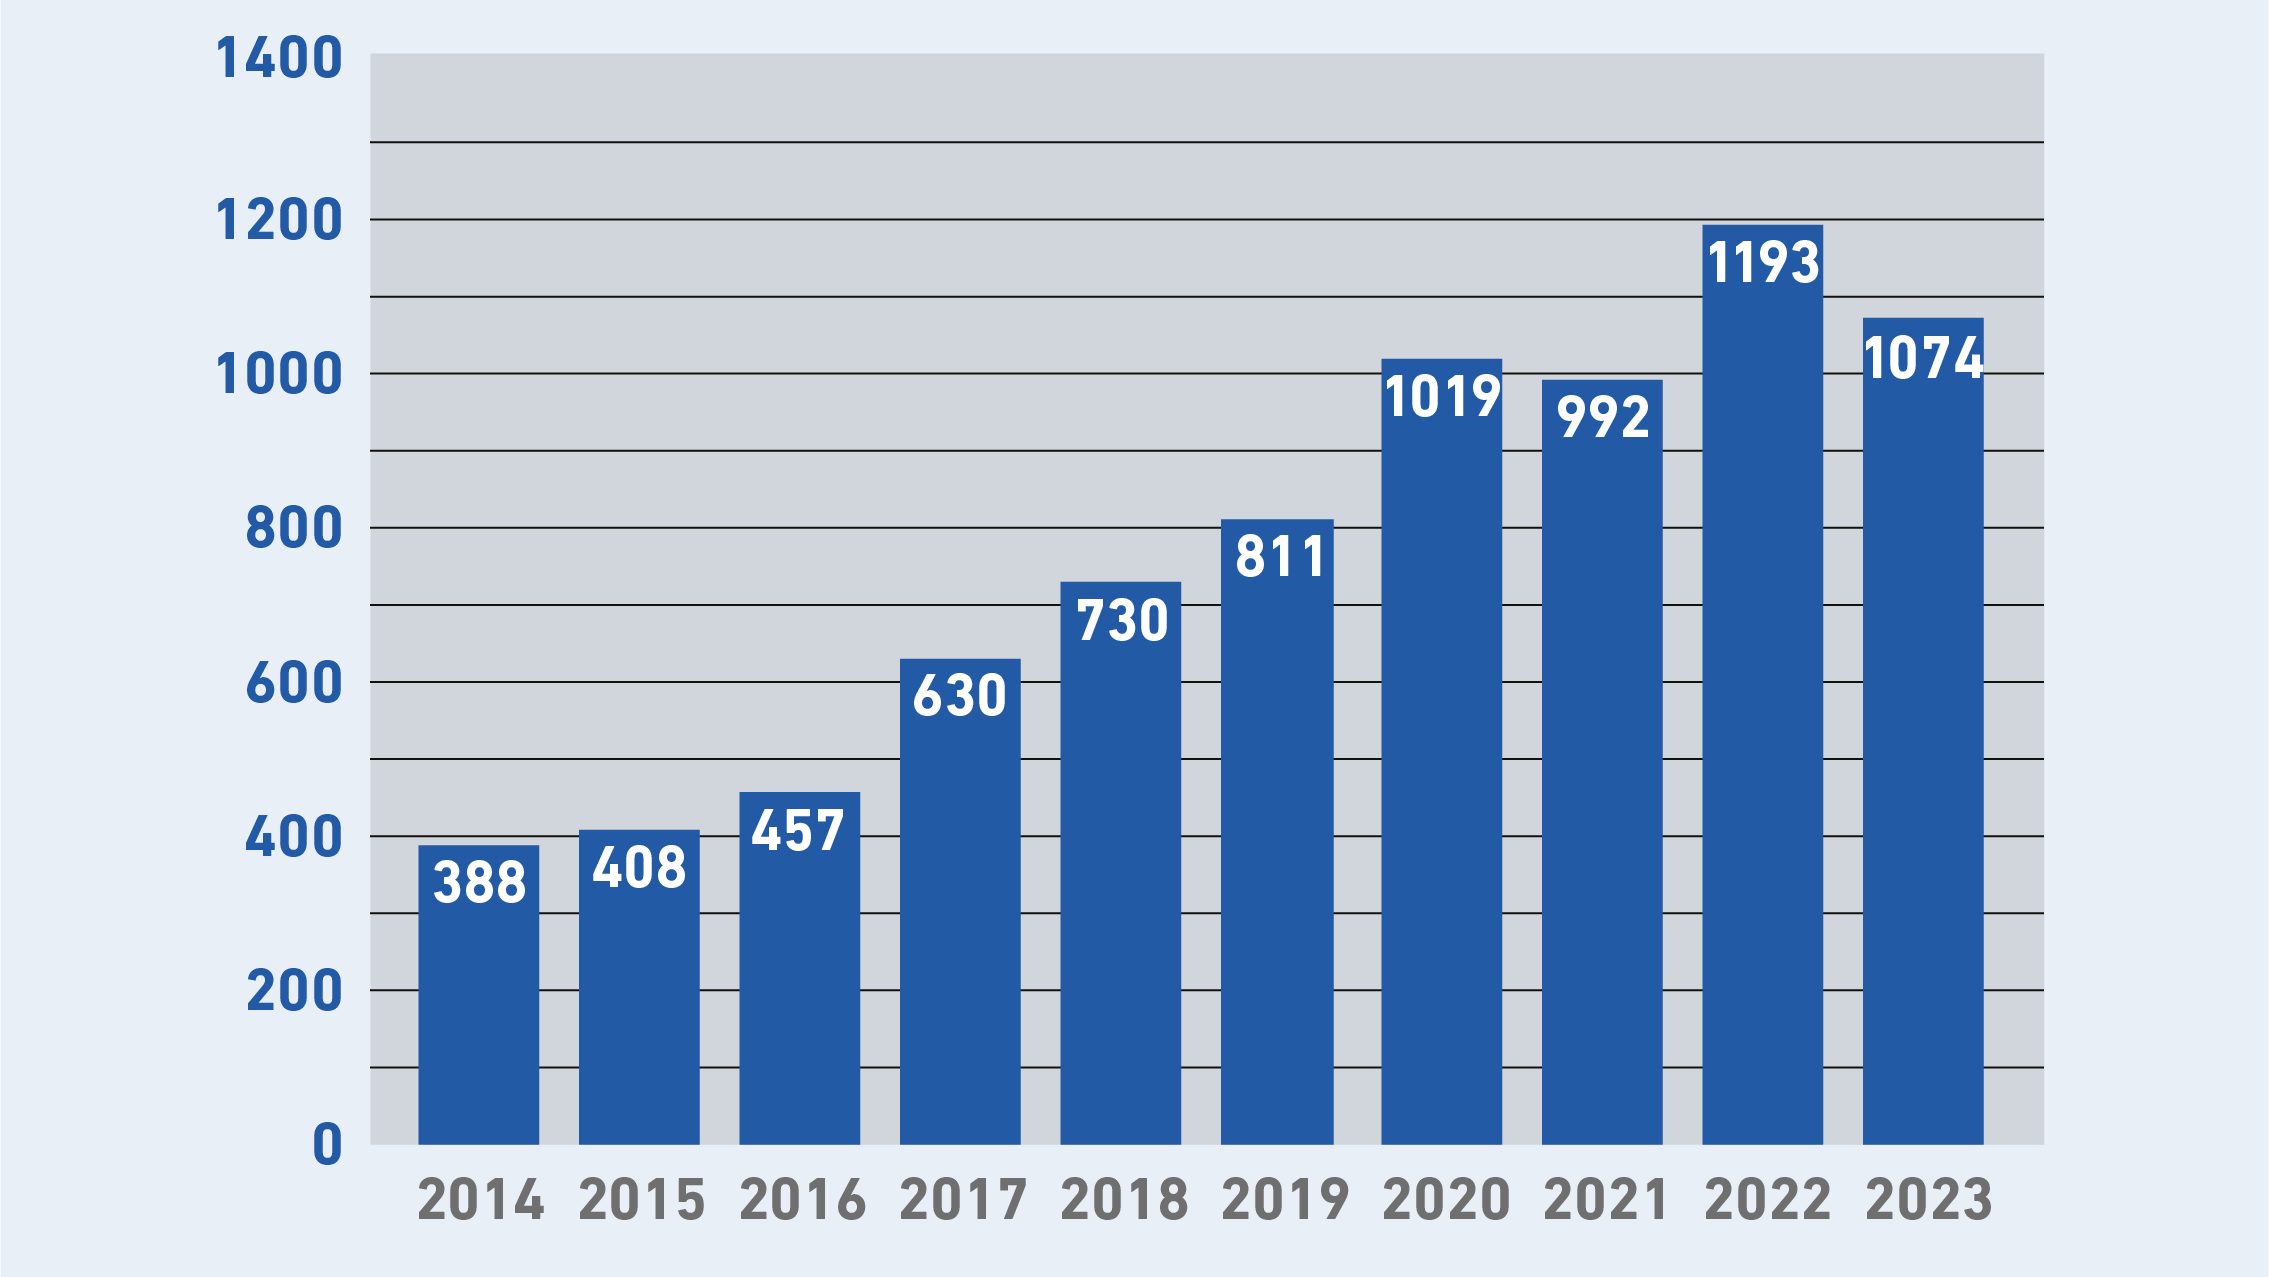 Entwicklung der Weiterbildungsstudierenden von 2014 bis HS23 (von 388 auf 1074 Studierende)